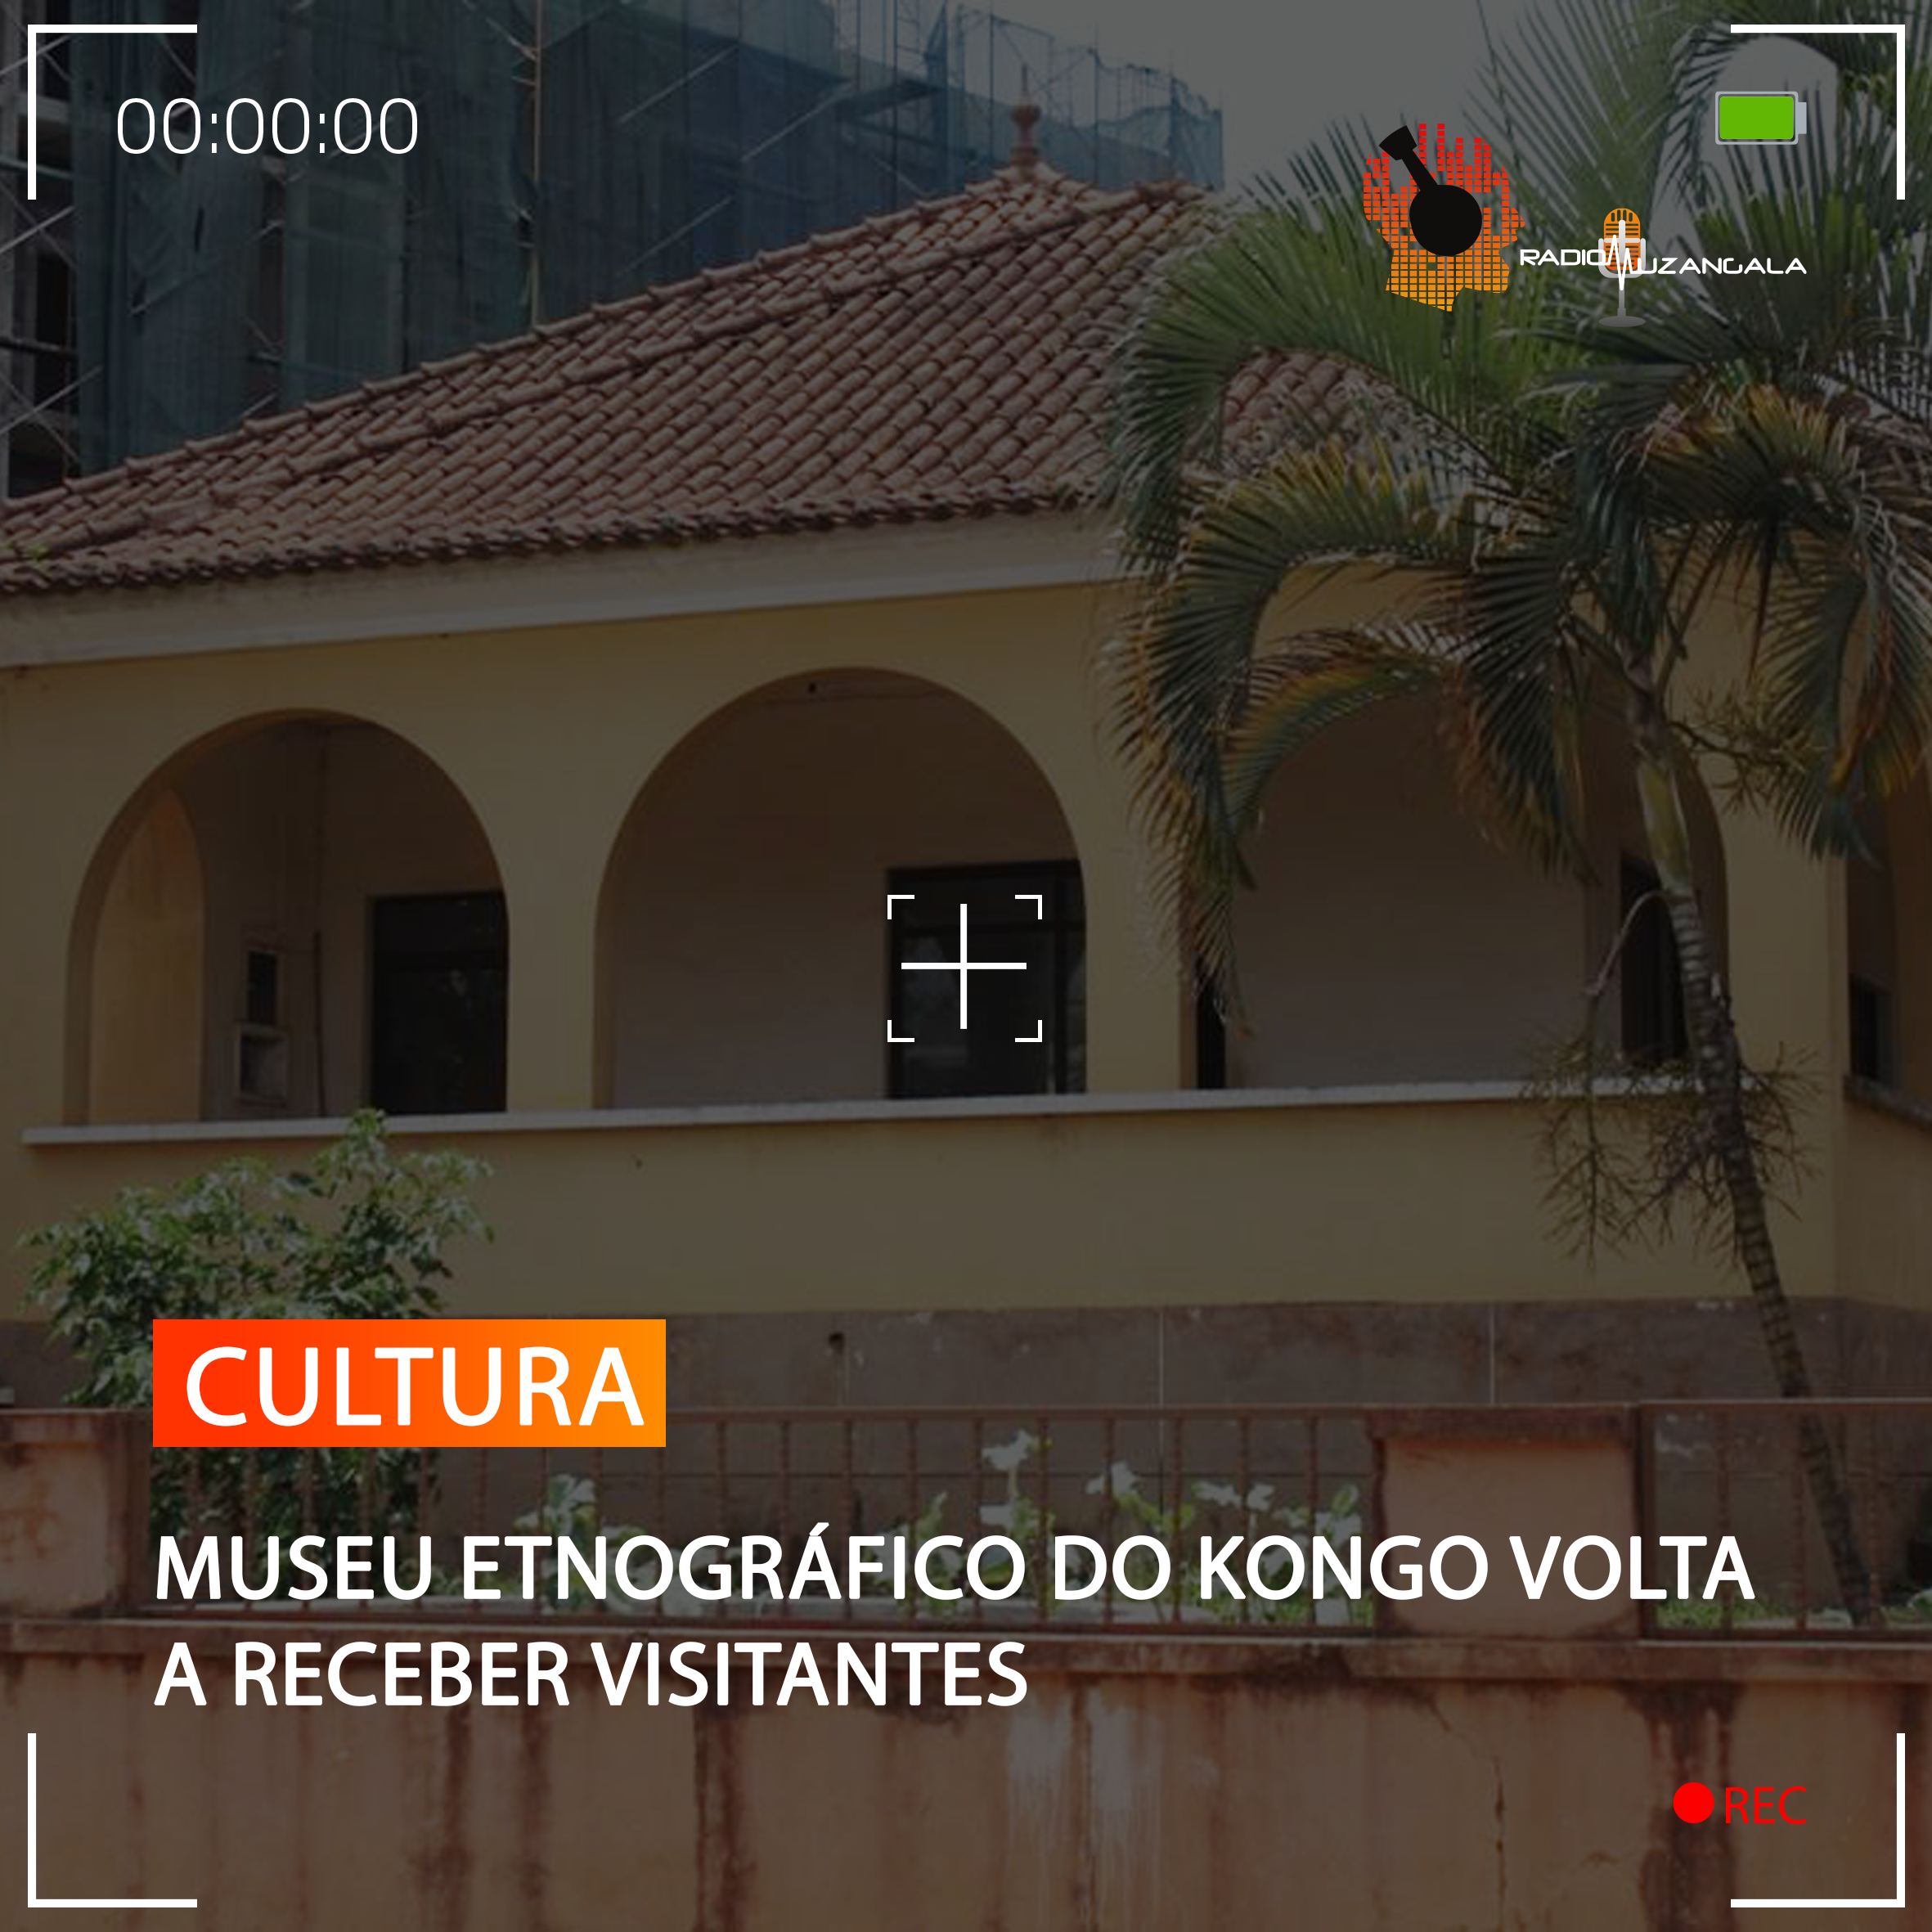  MUSEU ETNOGRÁFICO DO KONGO VOLTA A RECEBER VISITANTES